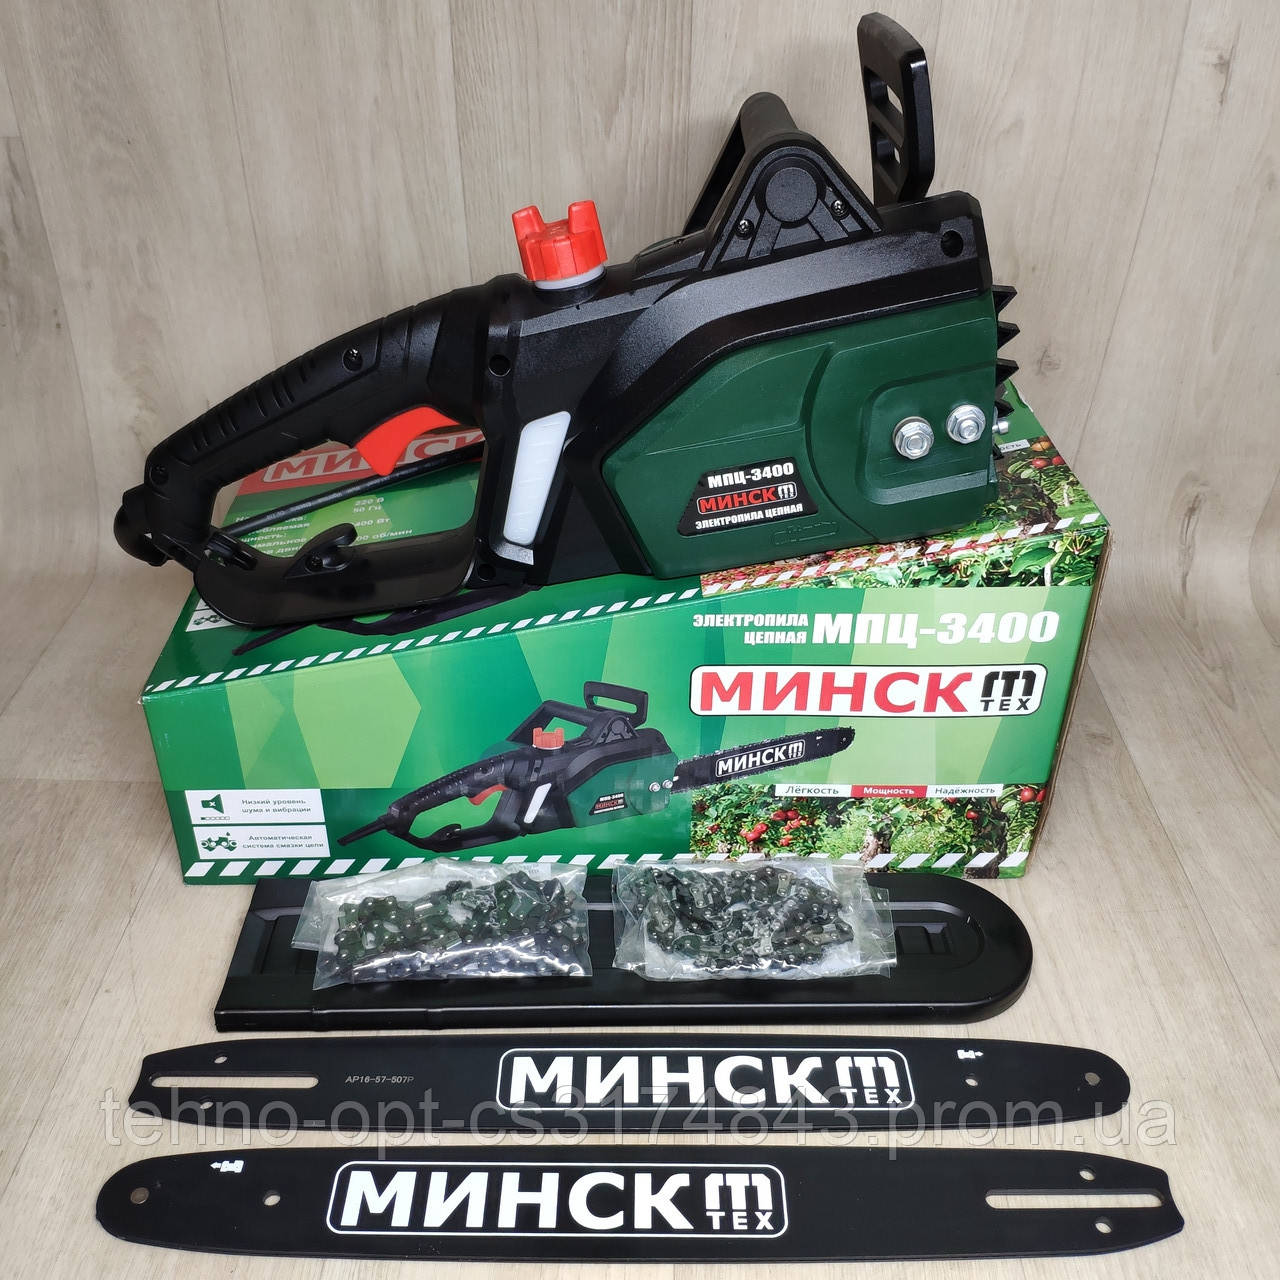  Минск МПЦ-3400 ( 2 шины две цепи ): заказ, цены в Харькове .